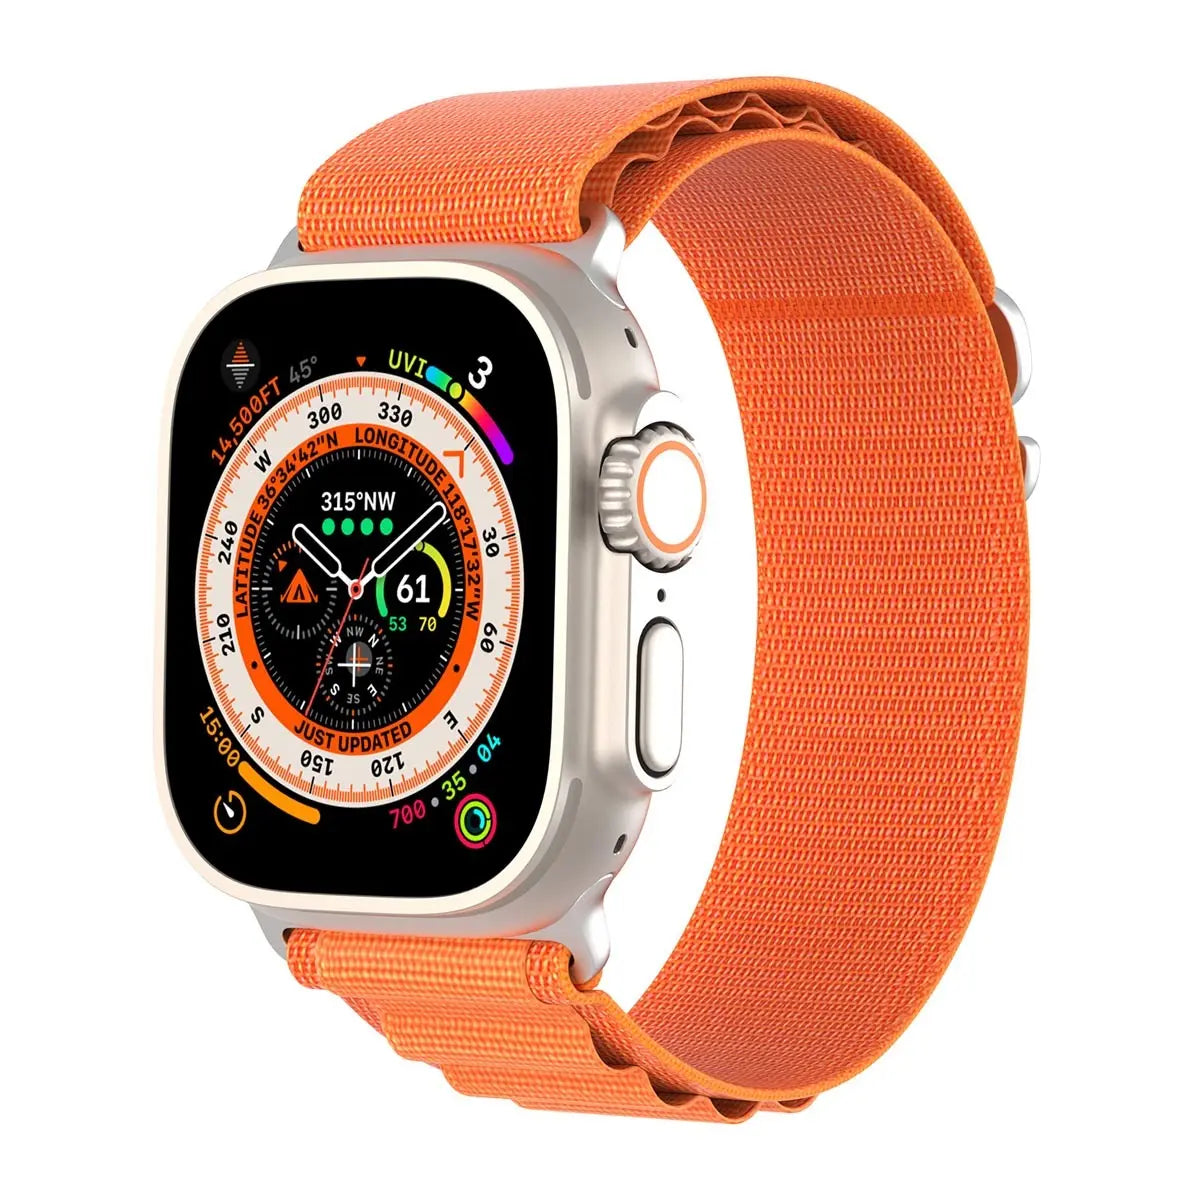 Apple Watch med orange Alpine Loop-band framifrån med tydlig urtavla.